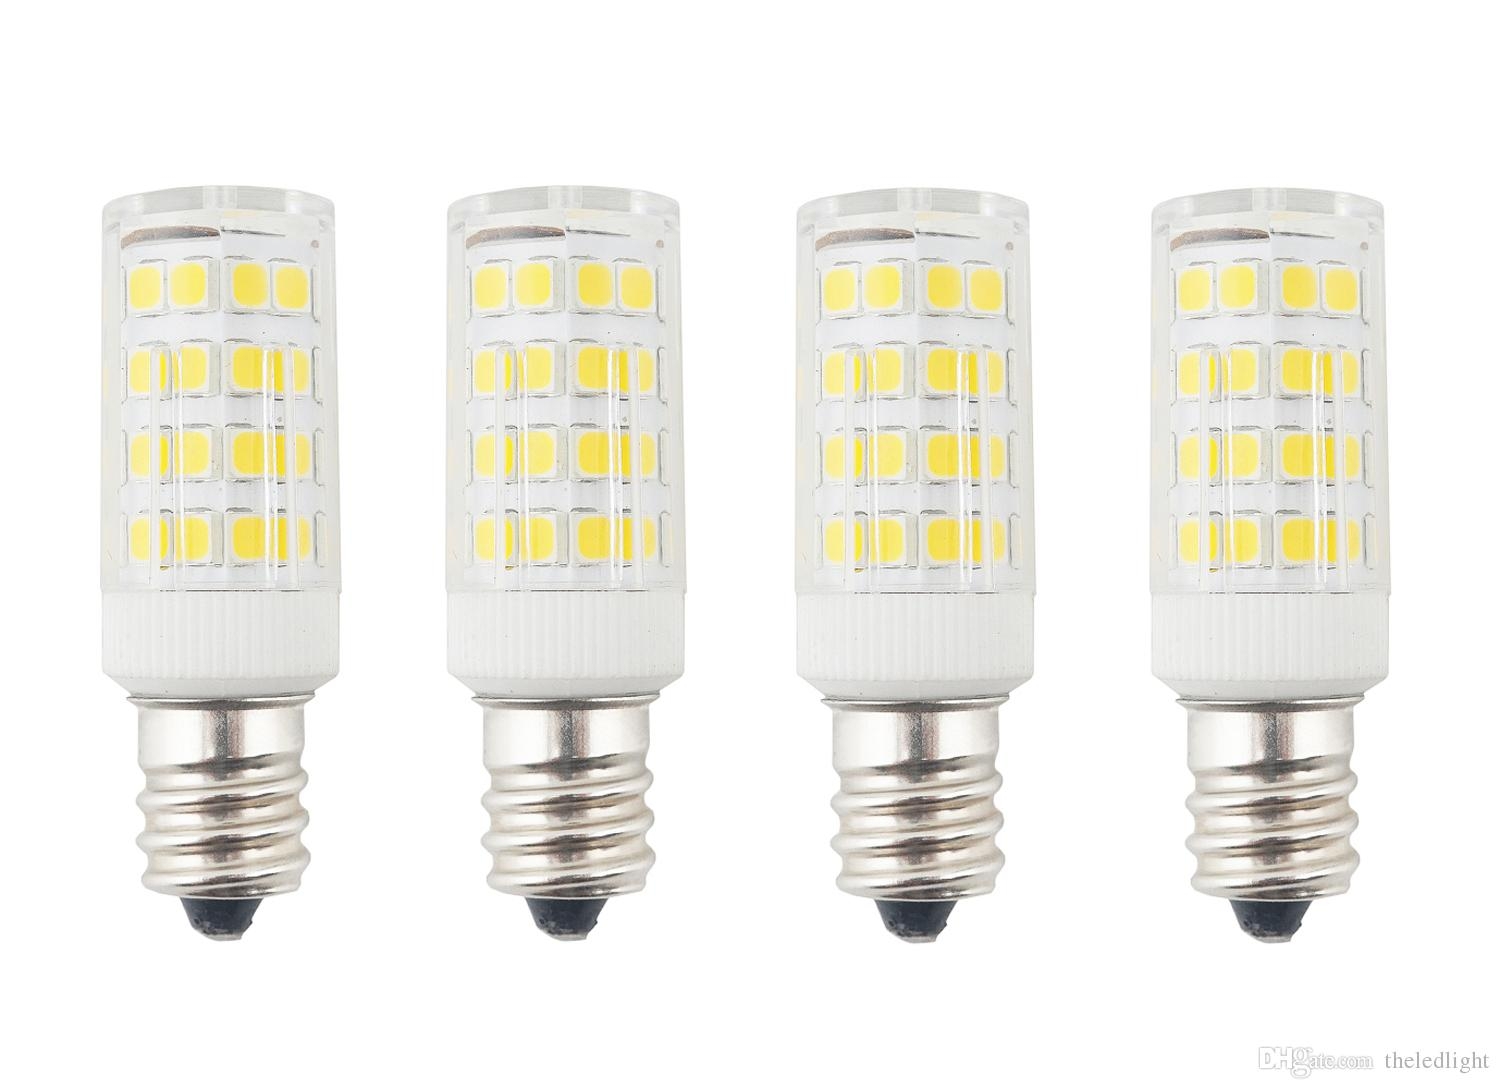 Led Light Bulbs For Ceiling Fans